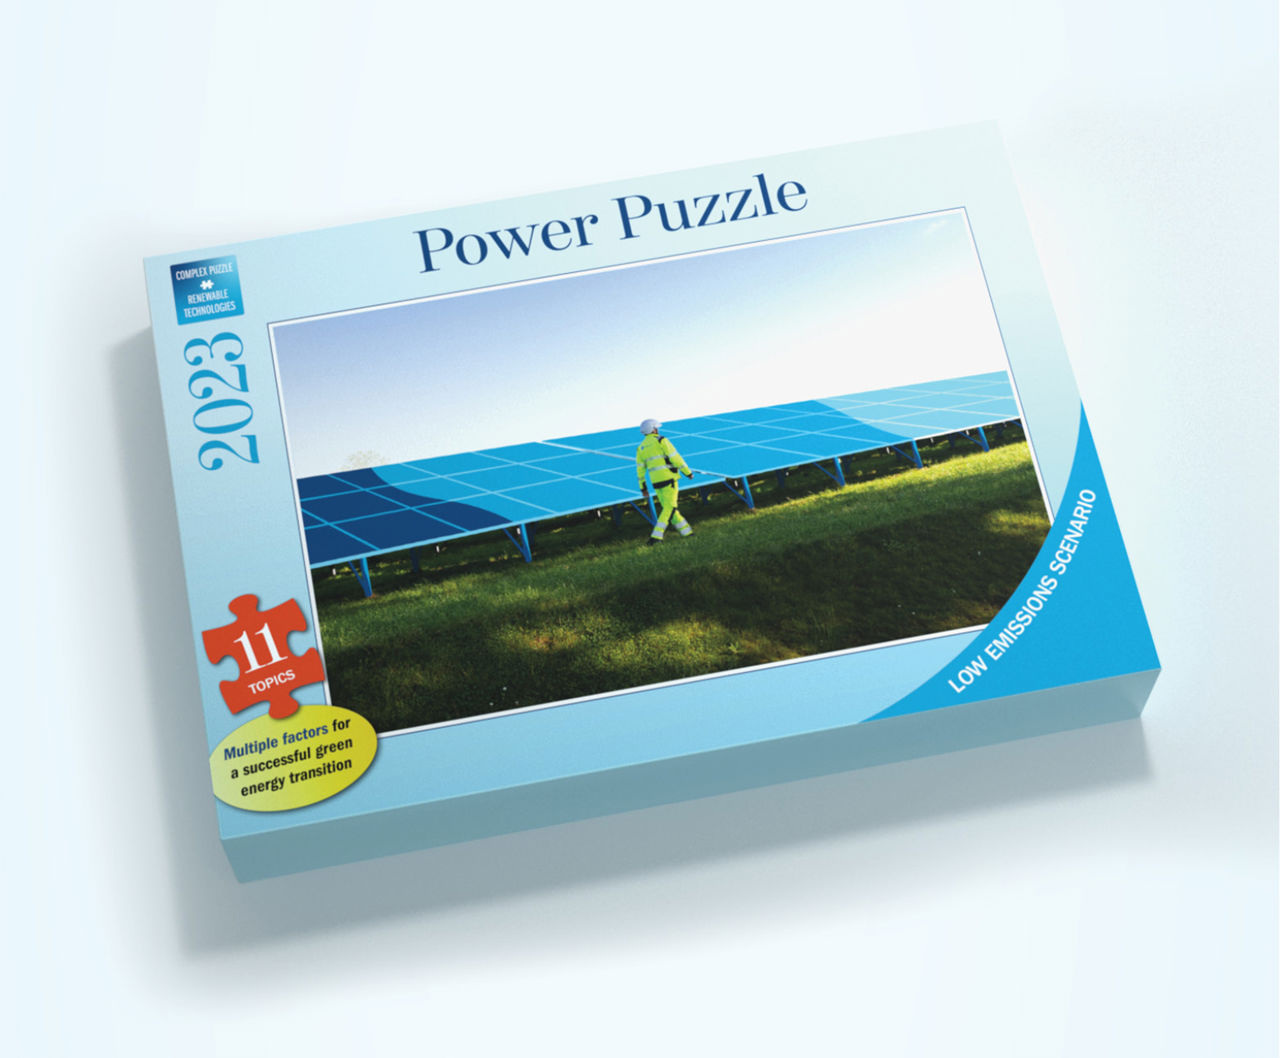 Uma caixa de quebra-cabeças mostra uma barragem e o texto "Power Puzzle"